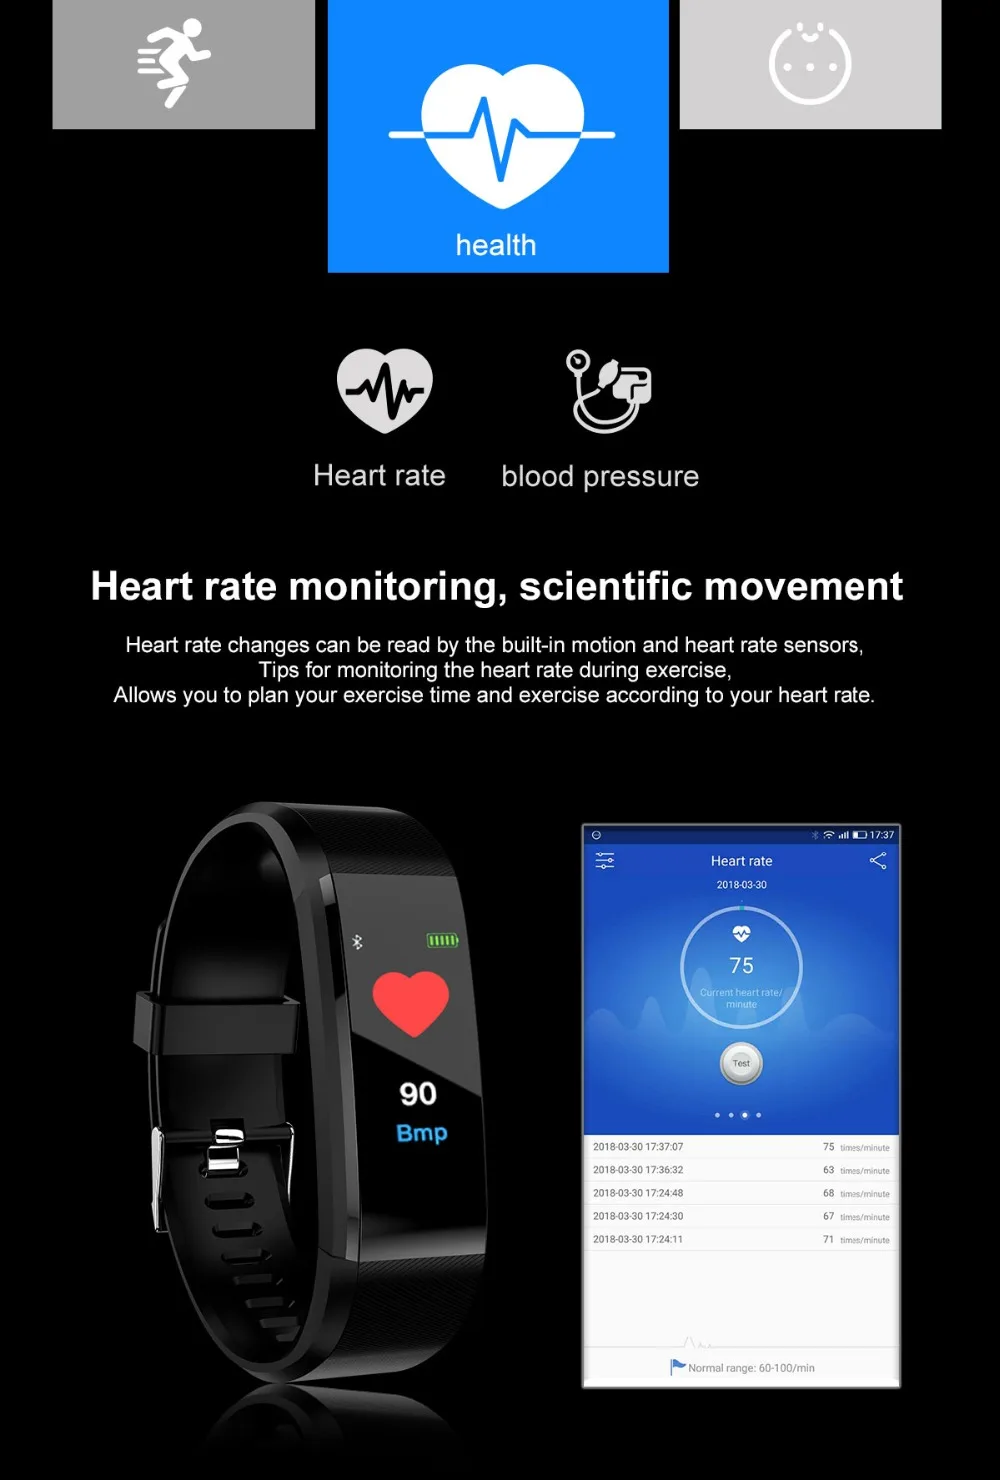 LYKRY светодиодный смарт-часы для мужчин и женщин фитнес-браслет часы Спорт бег Смарт-часы монитор сердечного ритма Smartwatch для IOS Android